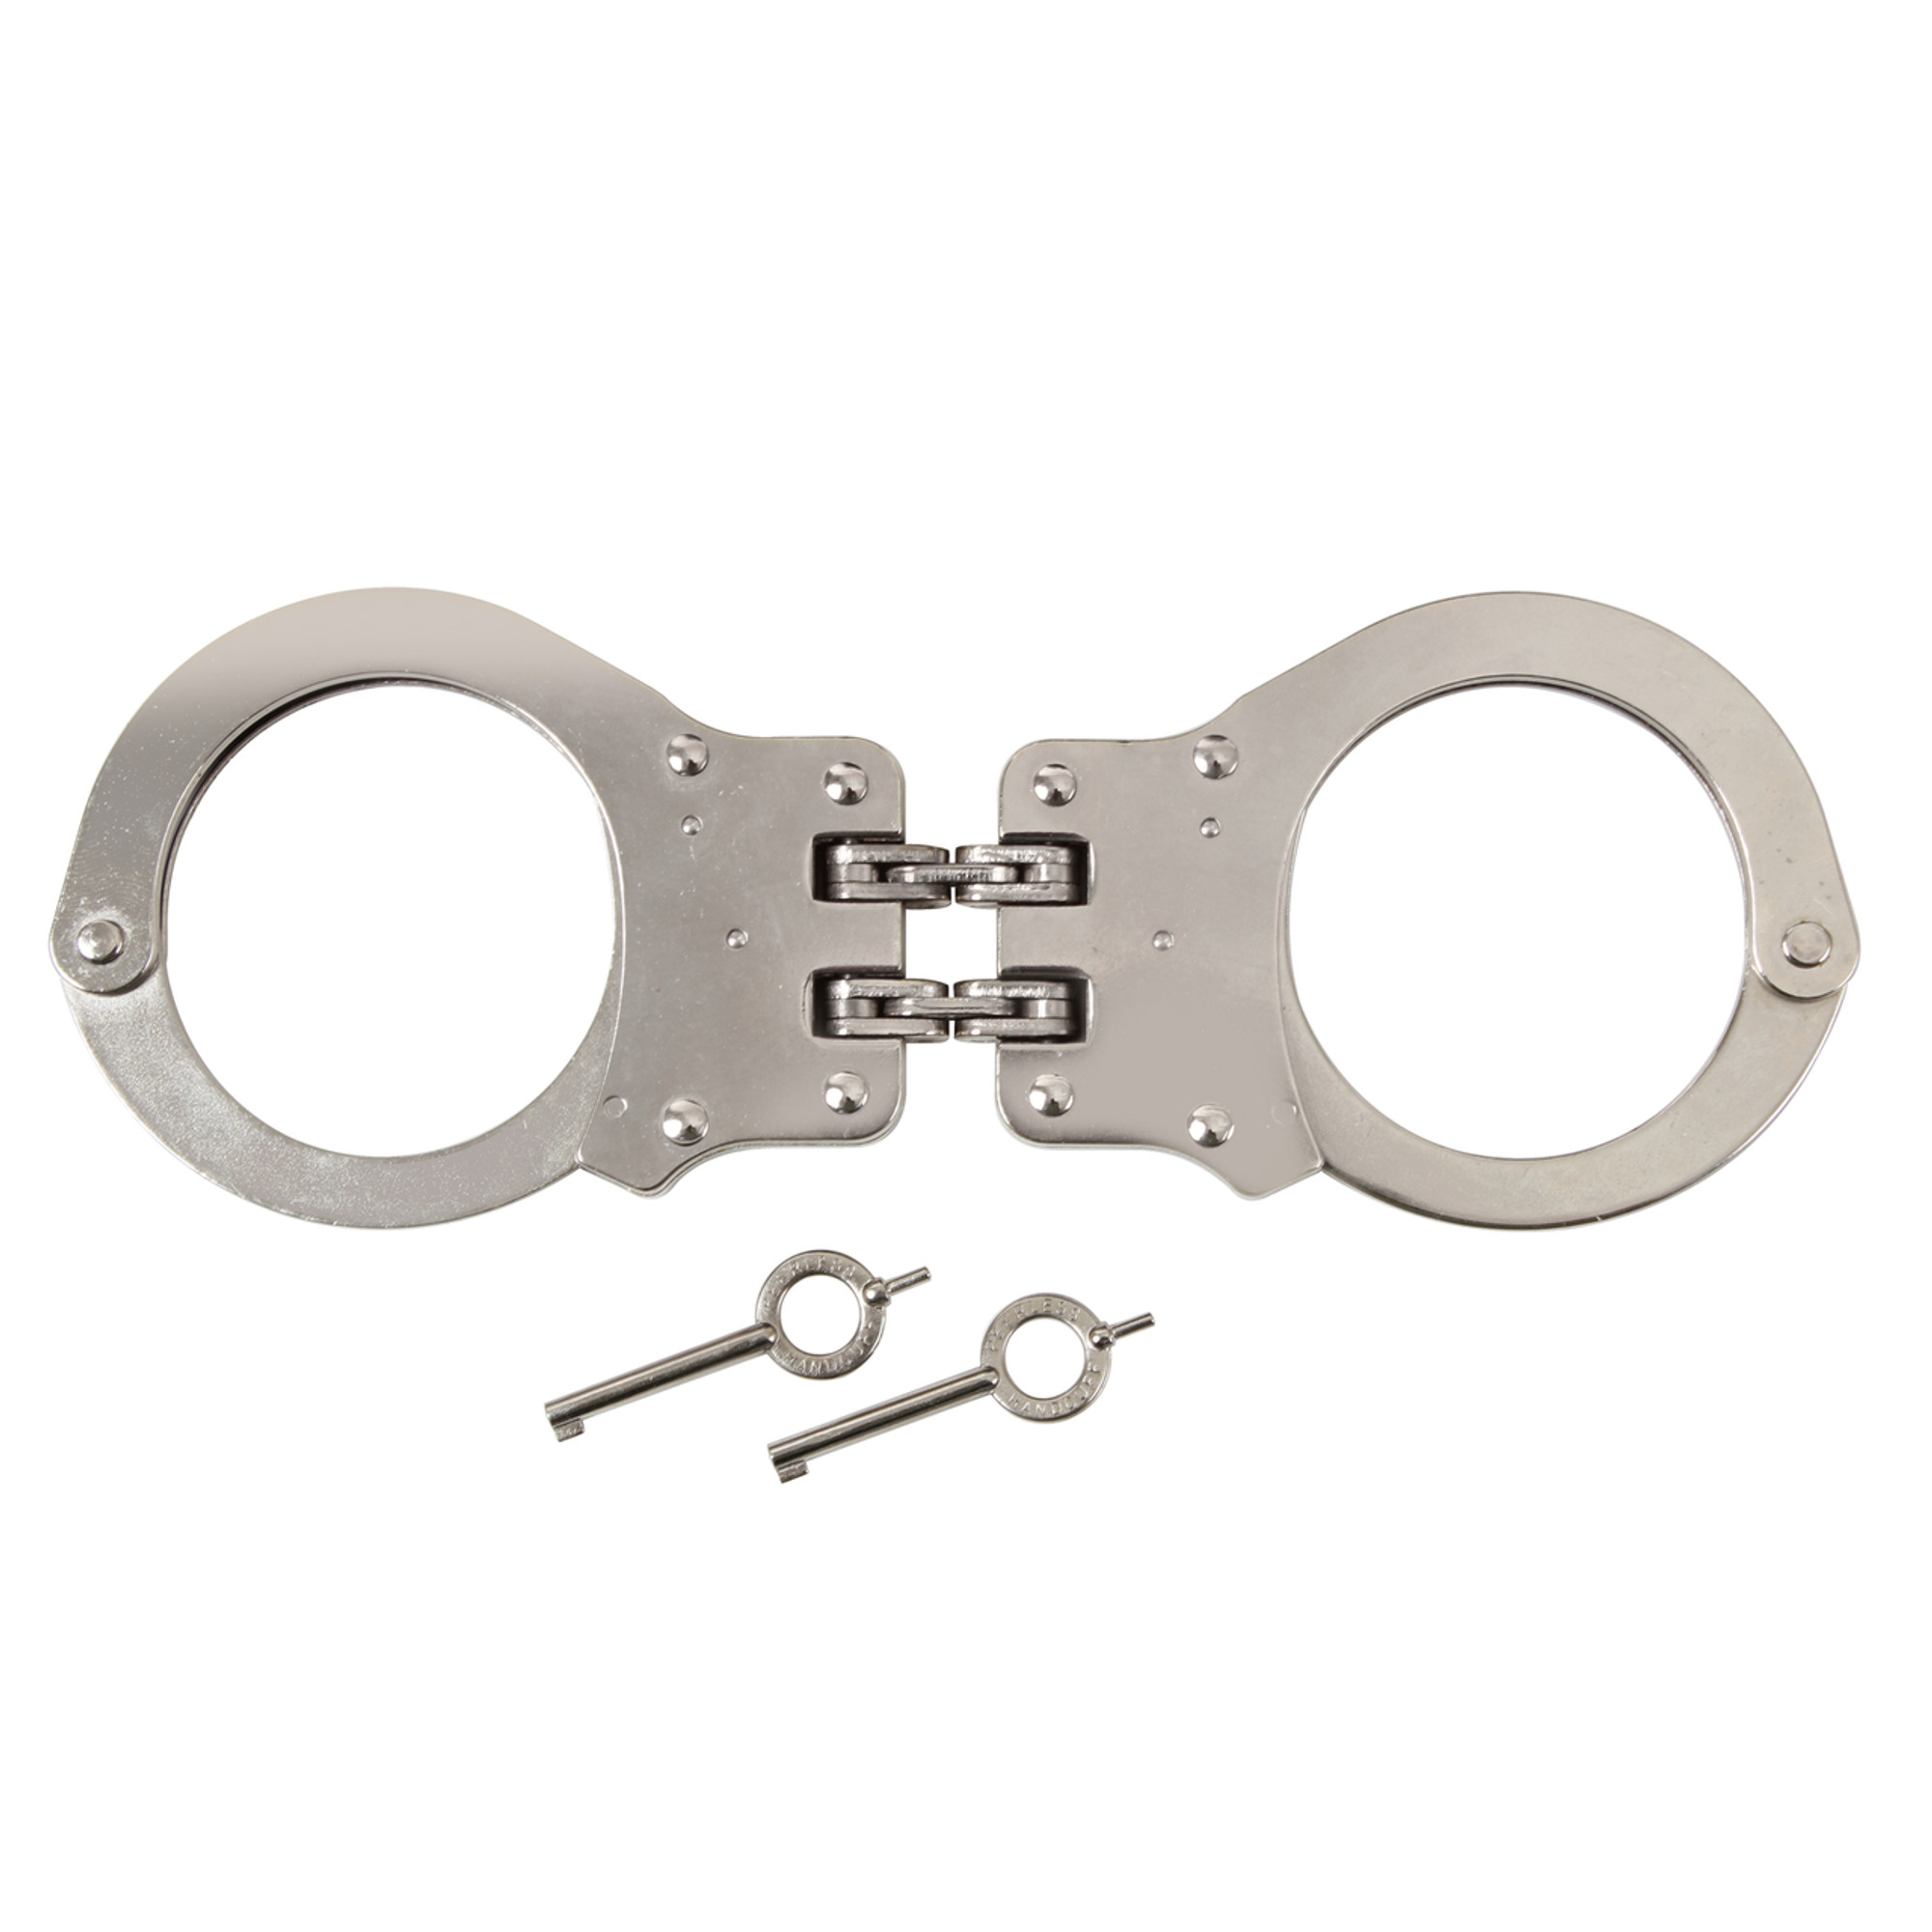  Peerless Standard Handcuff Key- (2 Pack Nickel) : Sports &  Outdoors